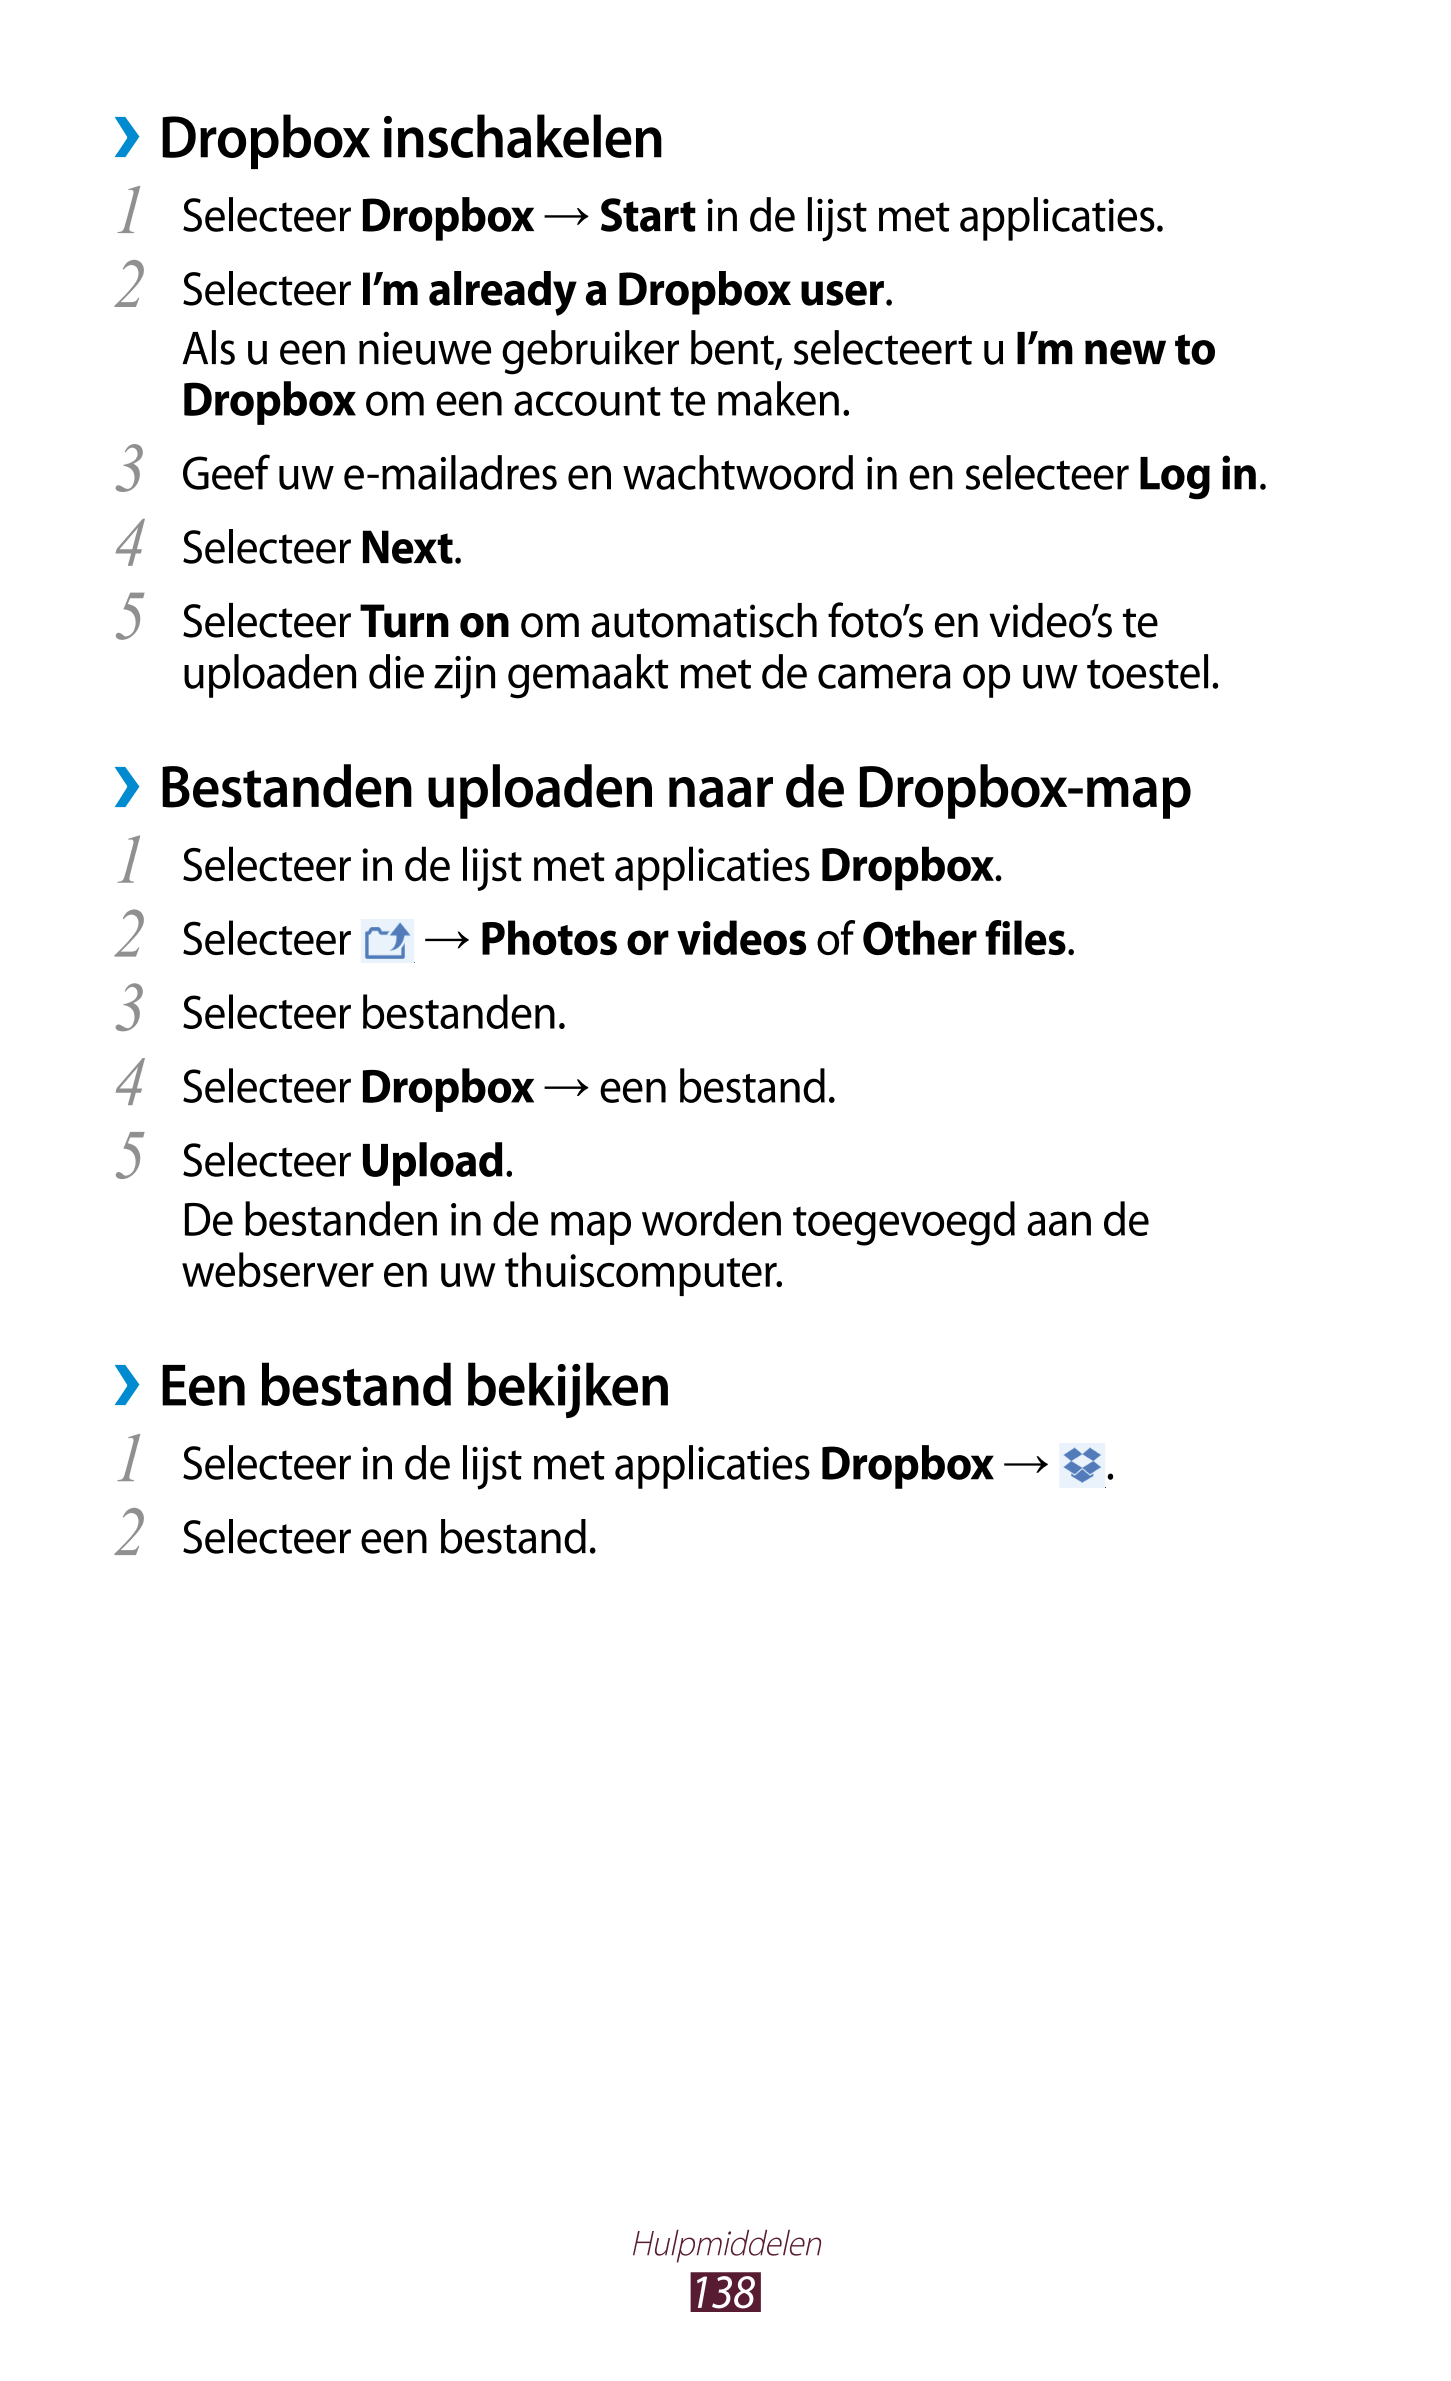   Dropbox inschakelen
1  Selecteer  Dropbox  →  Start in de lijst met applicaties.
2  Selecteer  I’m already a Dropbox user.
Als